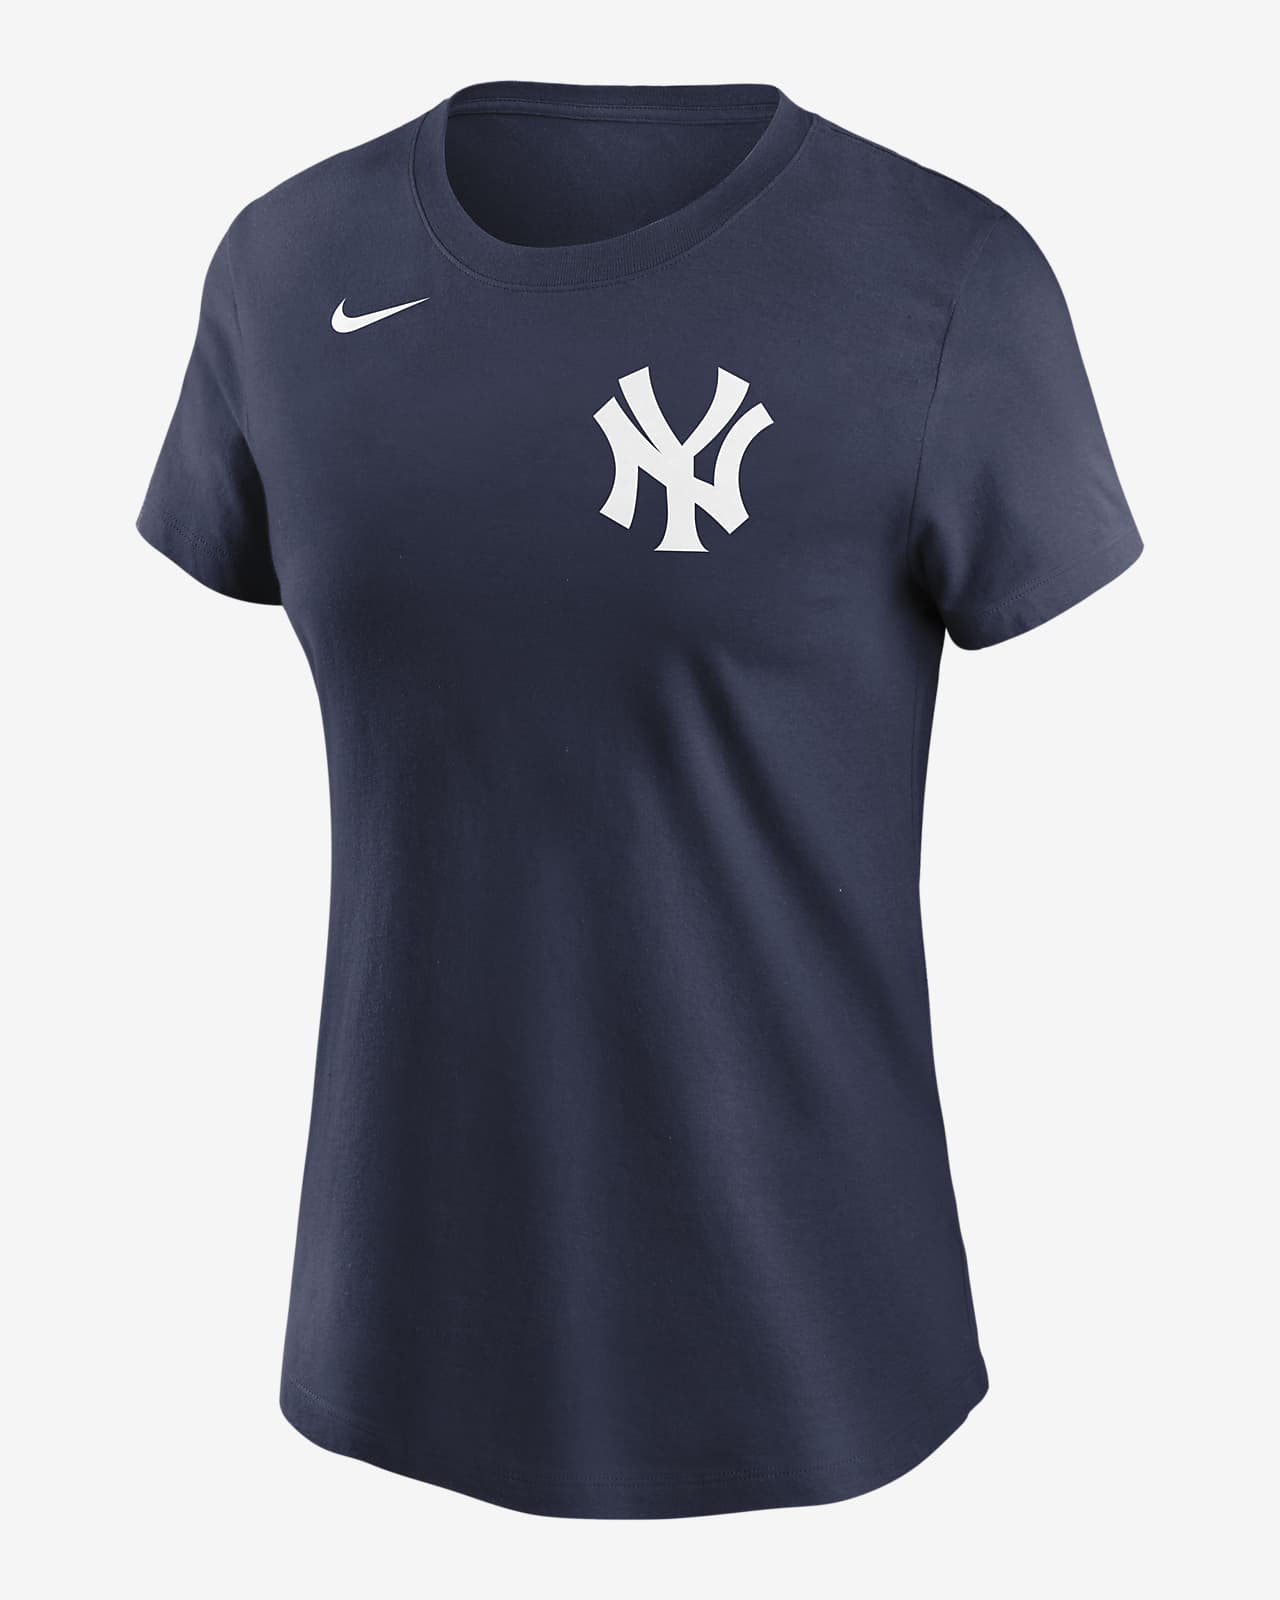 MLB New York Yankees (Derek Jeter) Women's T-Shirt